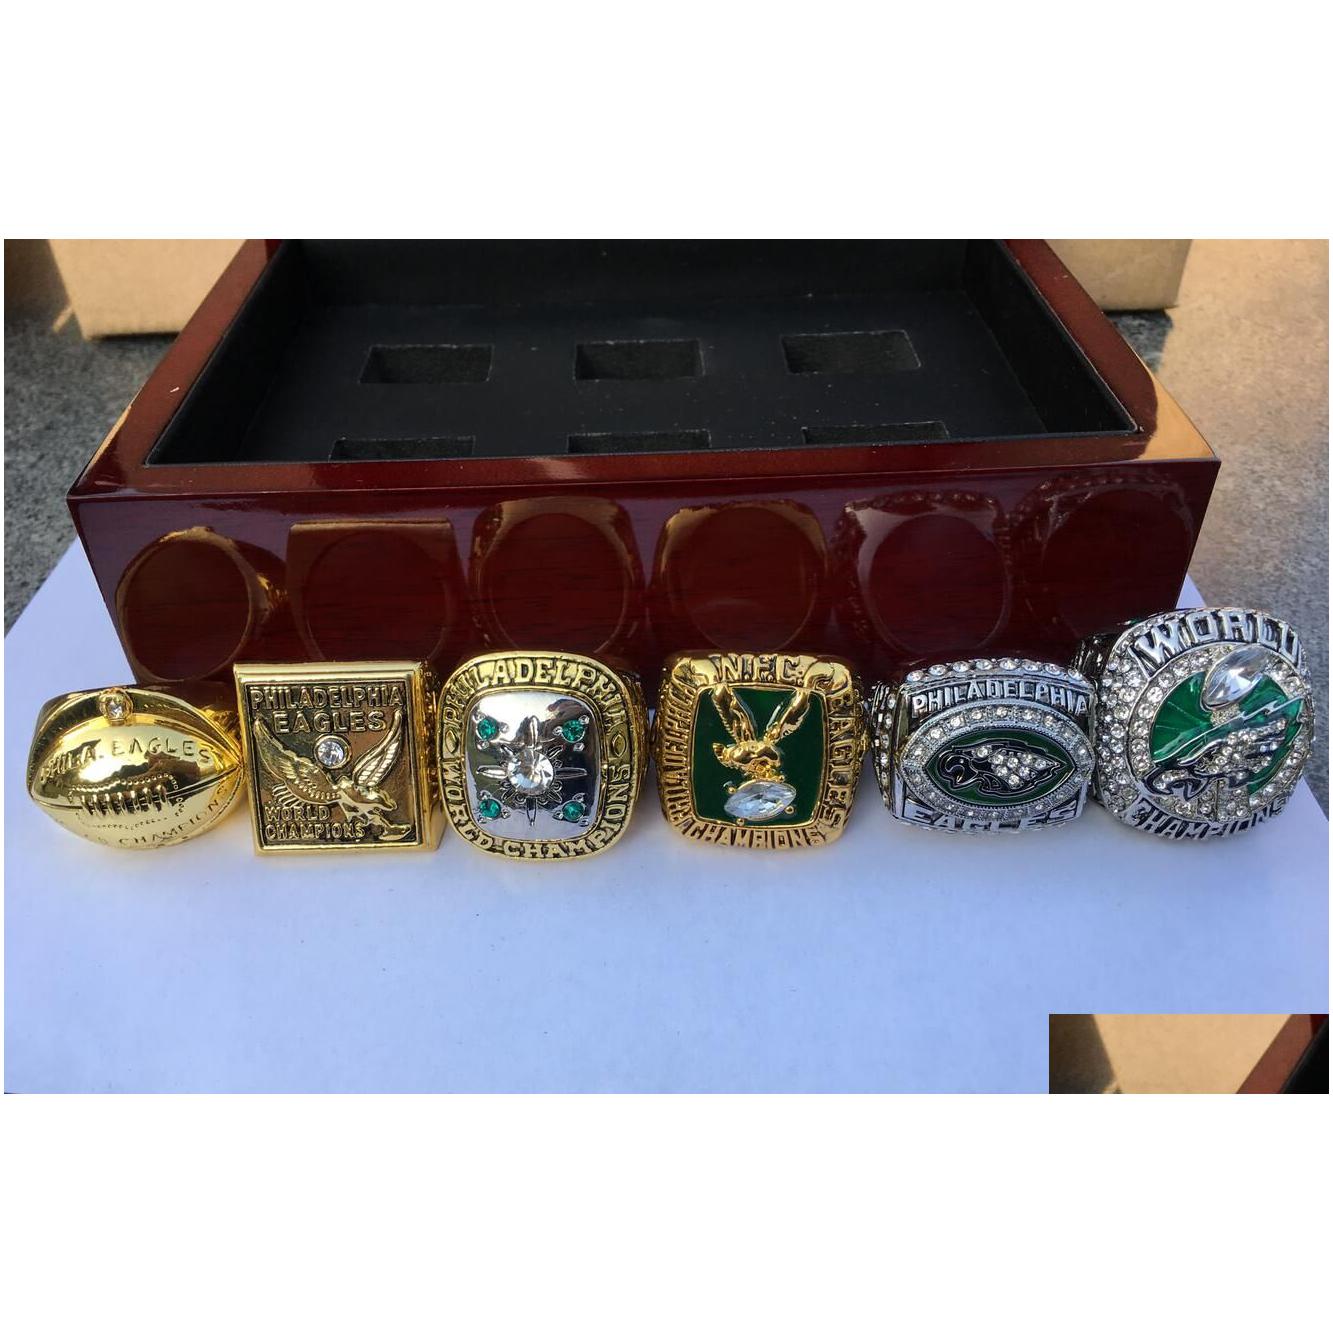 Philadelphia Eagle American Football Team Mistrzostwo mistrzostwa mistrzostwa z drewnianym pudełkiem pamiątki dla mężczyzn fan prezent upuszcza dostawa dhlfs